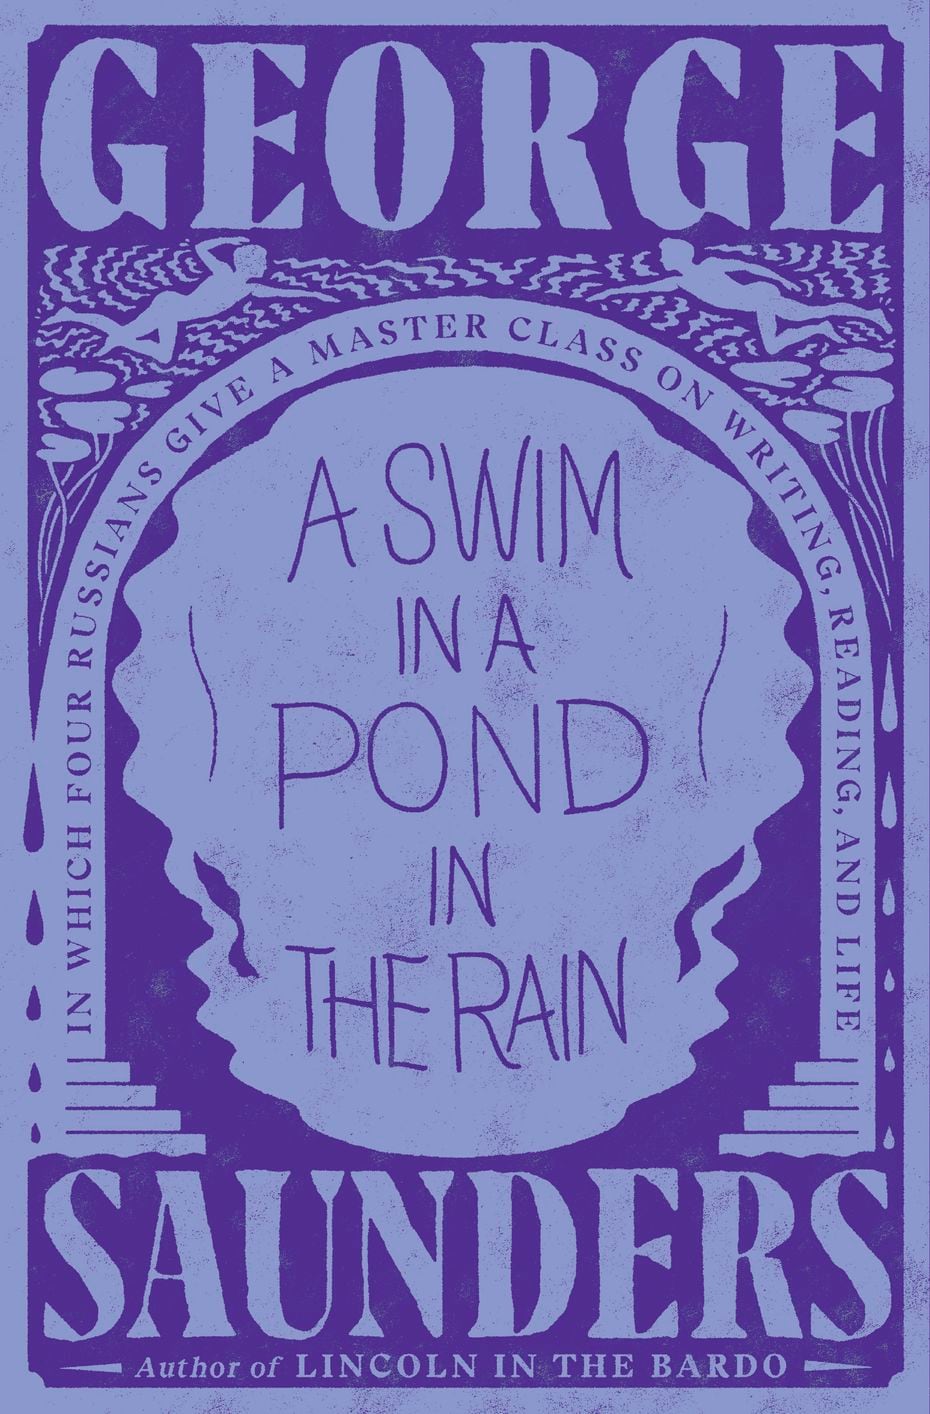 "Купание в бассейне под дождем" Написанный Джорджем Сондерсом, он углубляется в то, как истории влияют на нас.